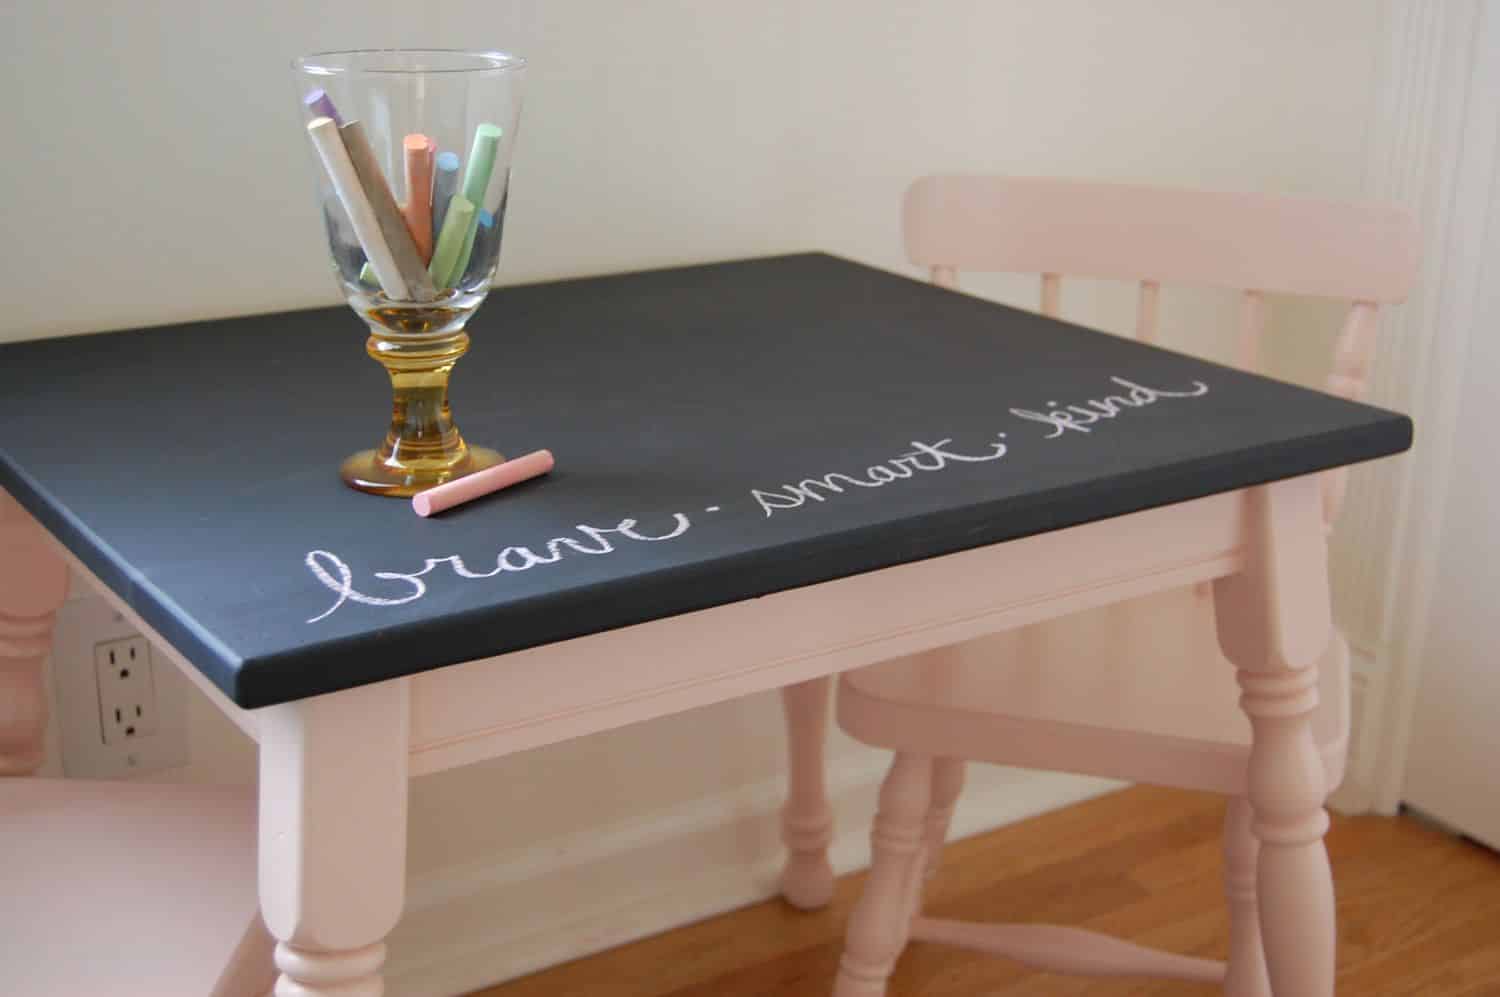 6. Making a chalkboard tabletop